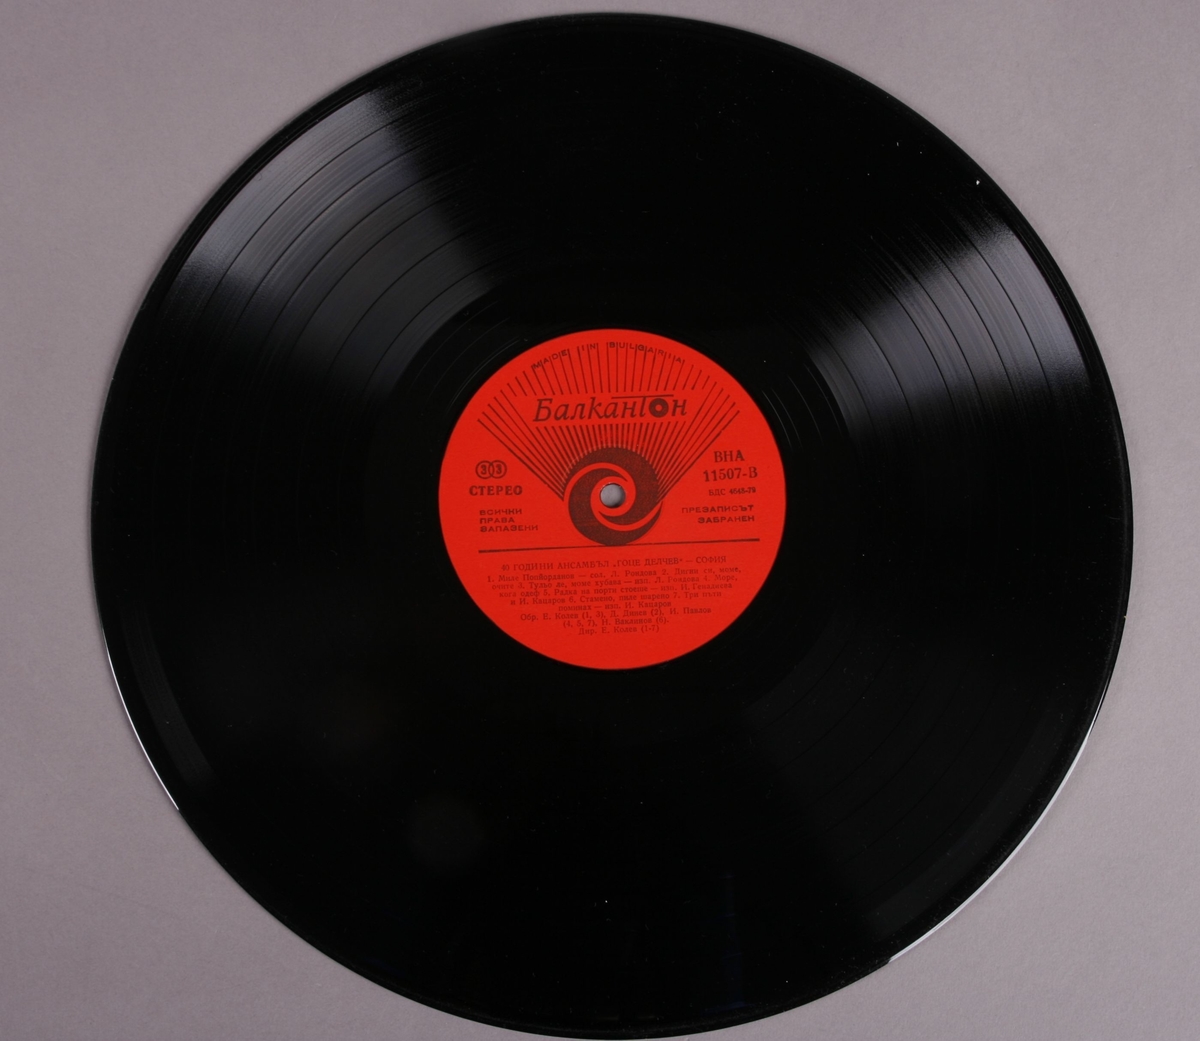 Grammofonplate i svart vinyl med plateomslag av papp. Platen ligger i en papirlomme.